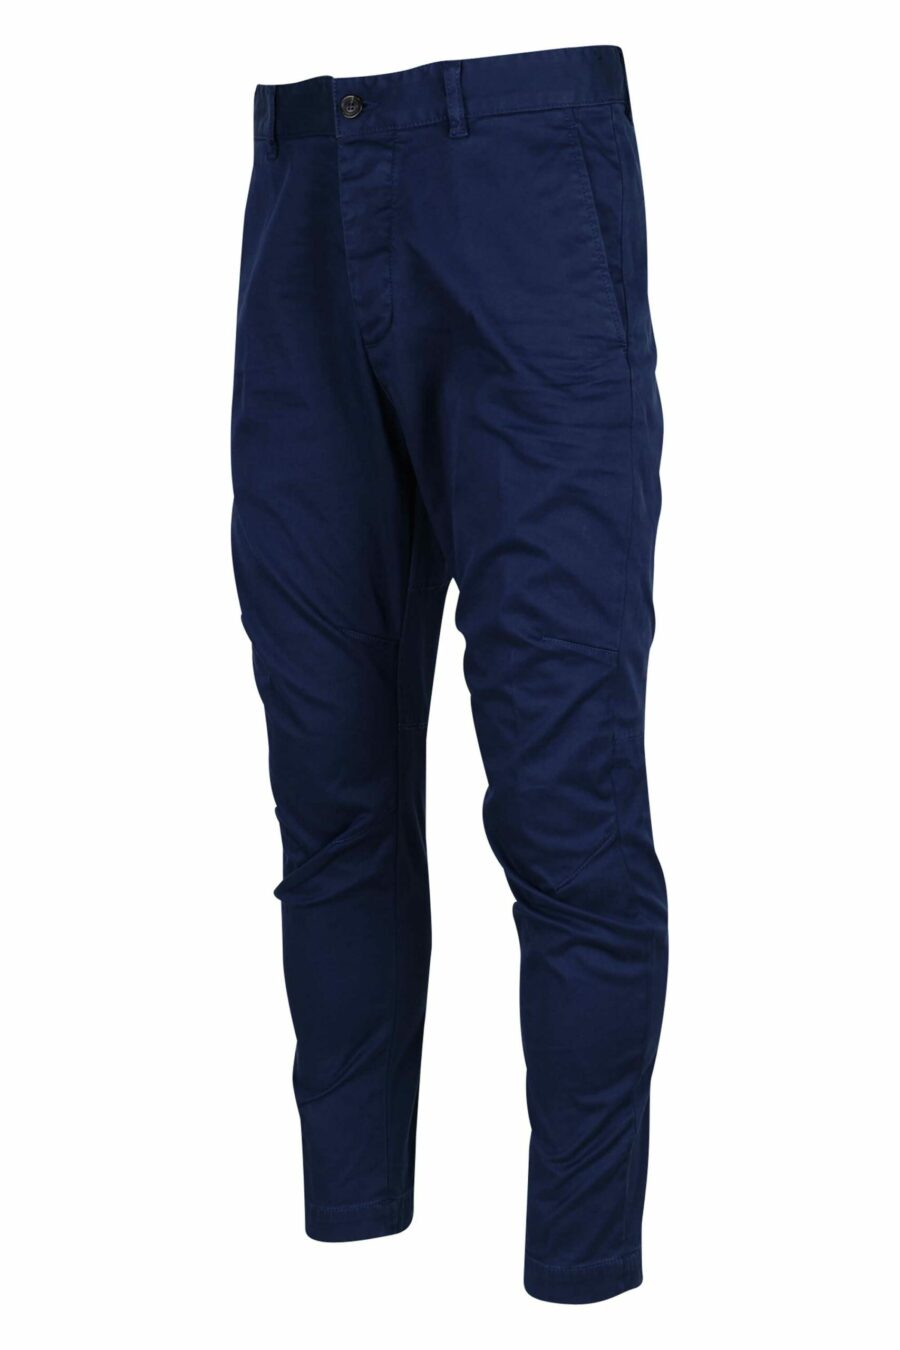 Pantalon bleu foncé "sexy chino" - 8054148321727 1 échelle